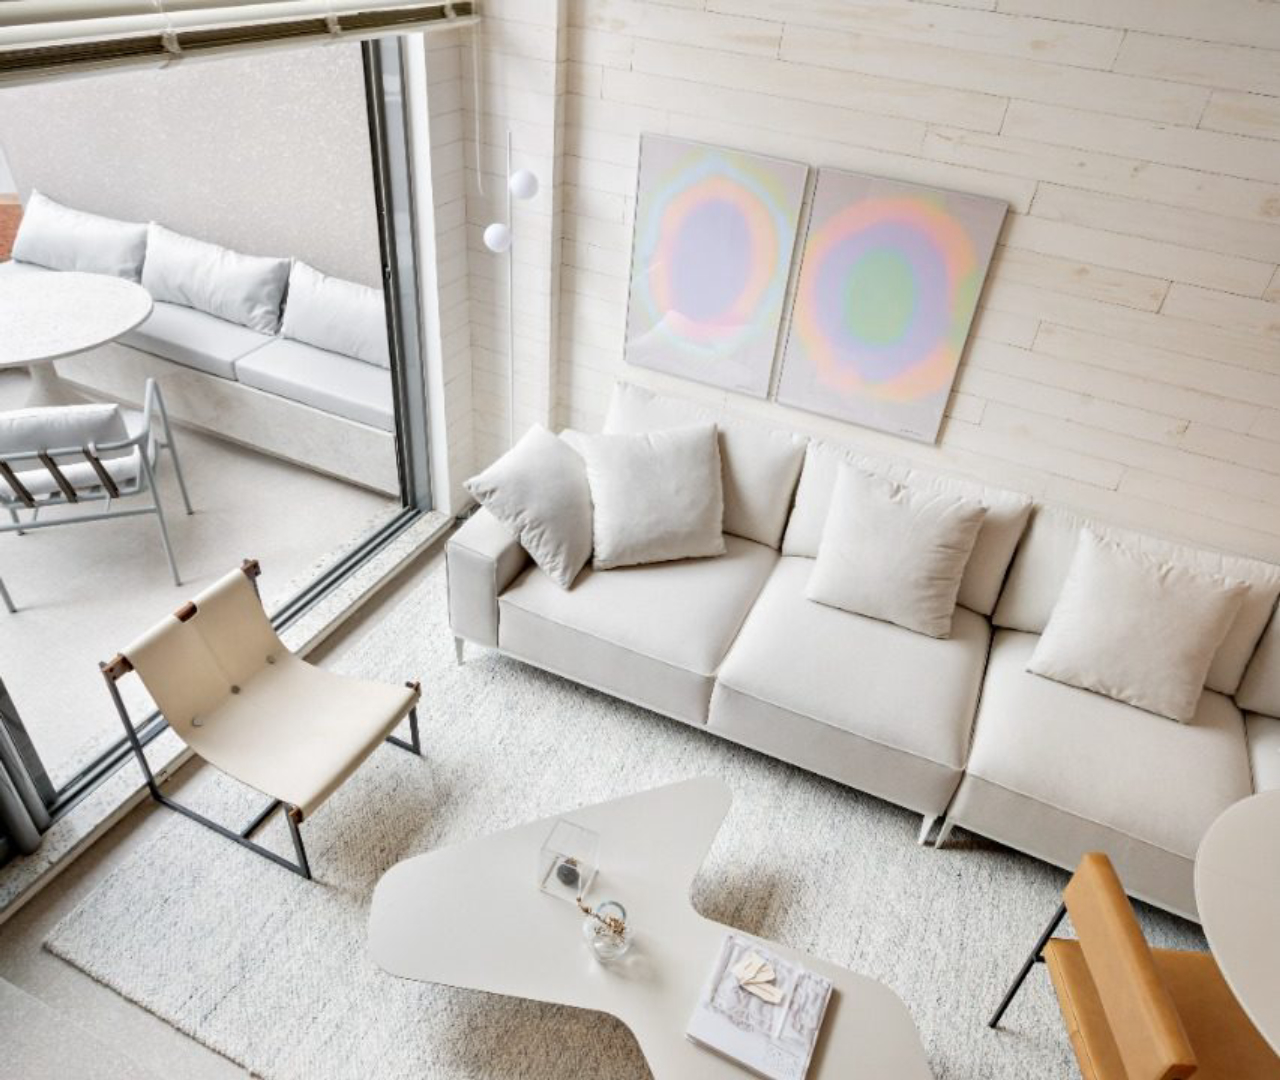 Apartamento de 58 m² por Belotto, Scopel e Tanaka (BST)